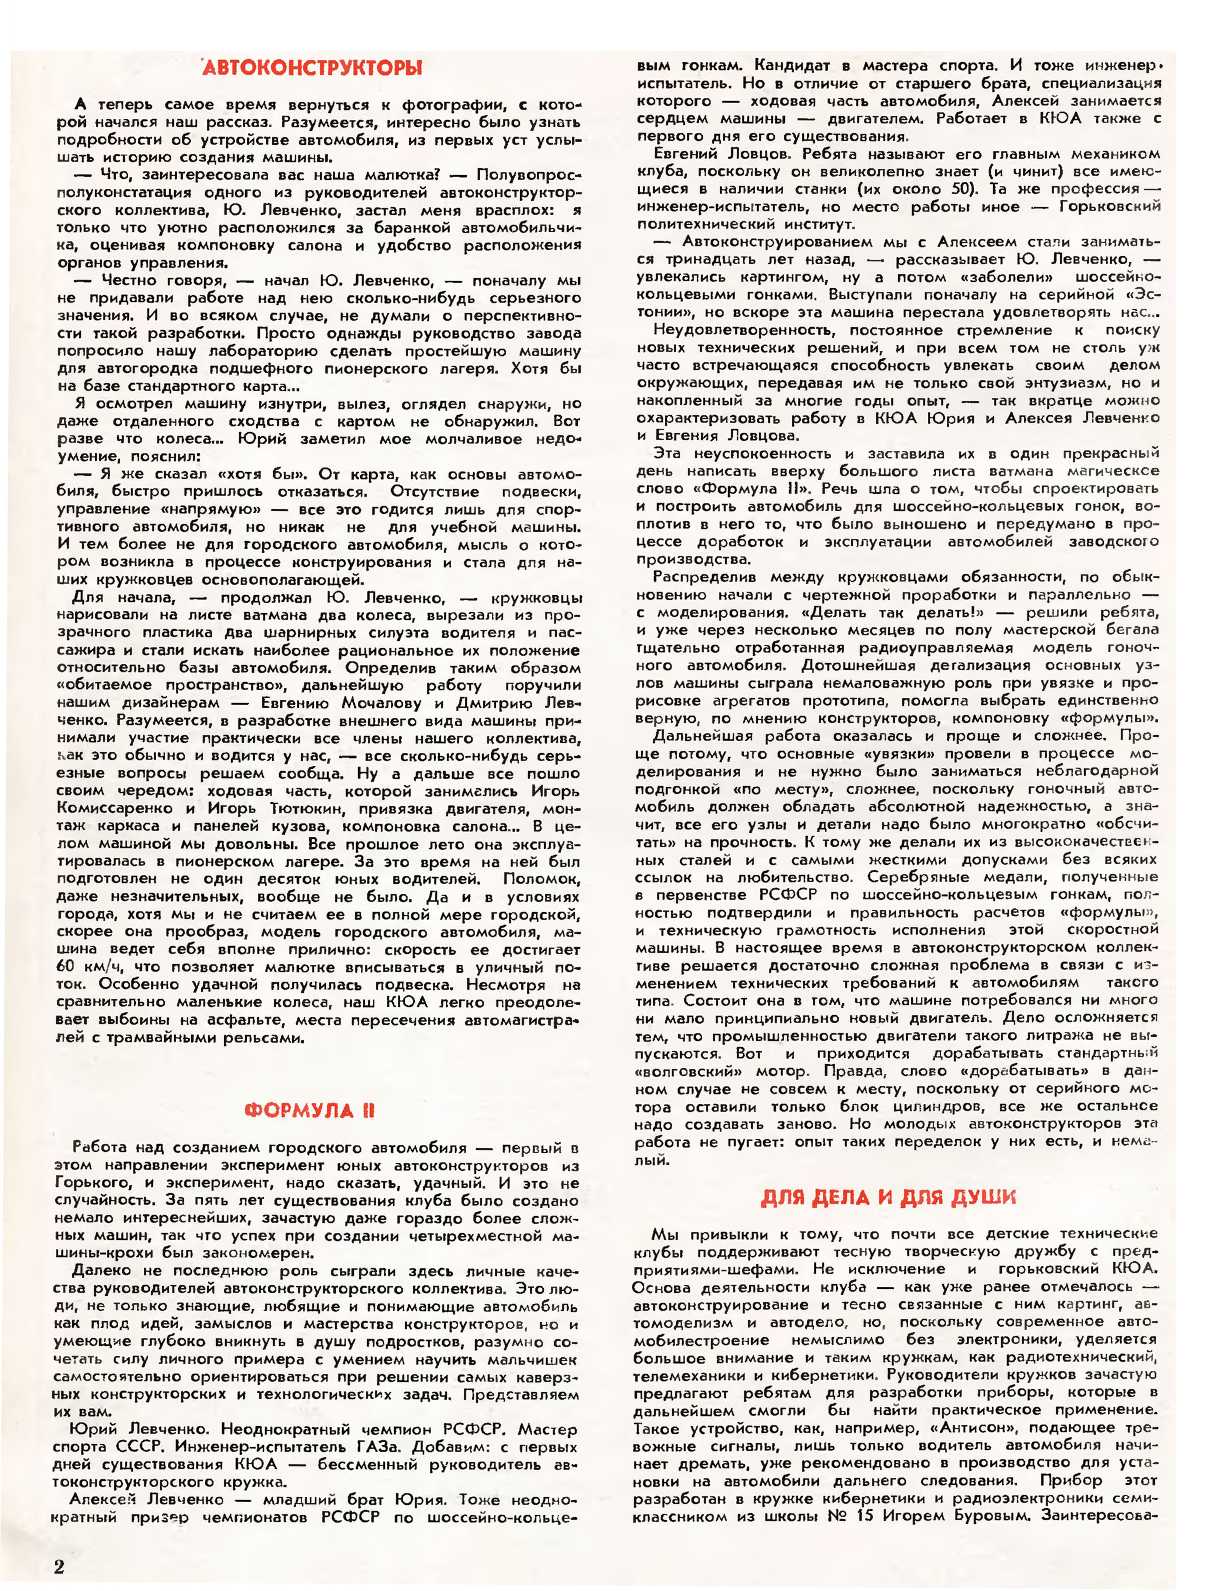 МК 8, 1979, 2 c.